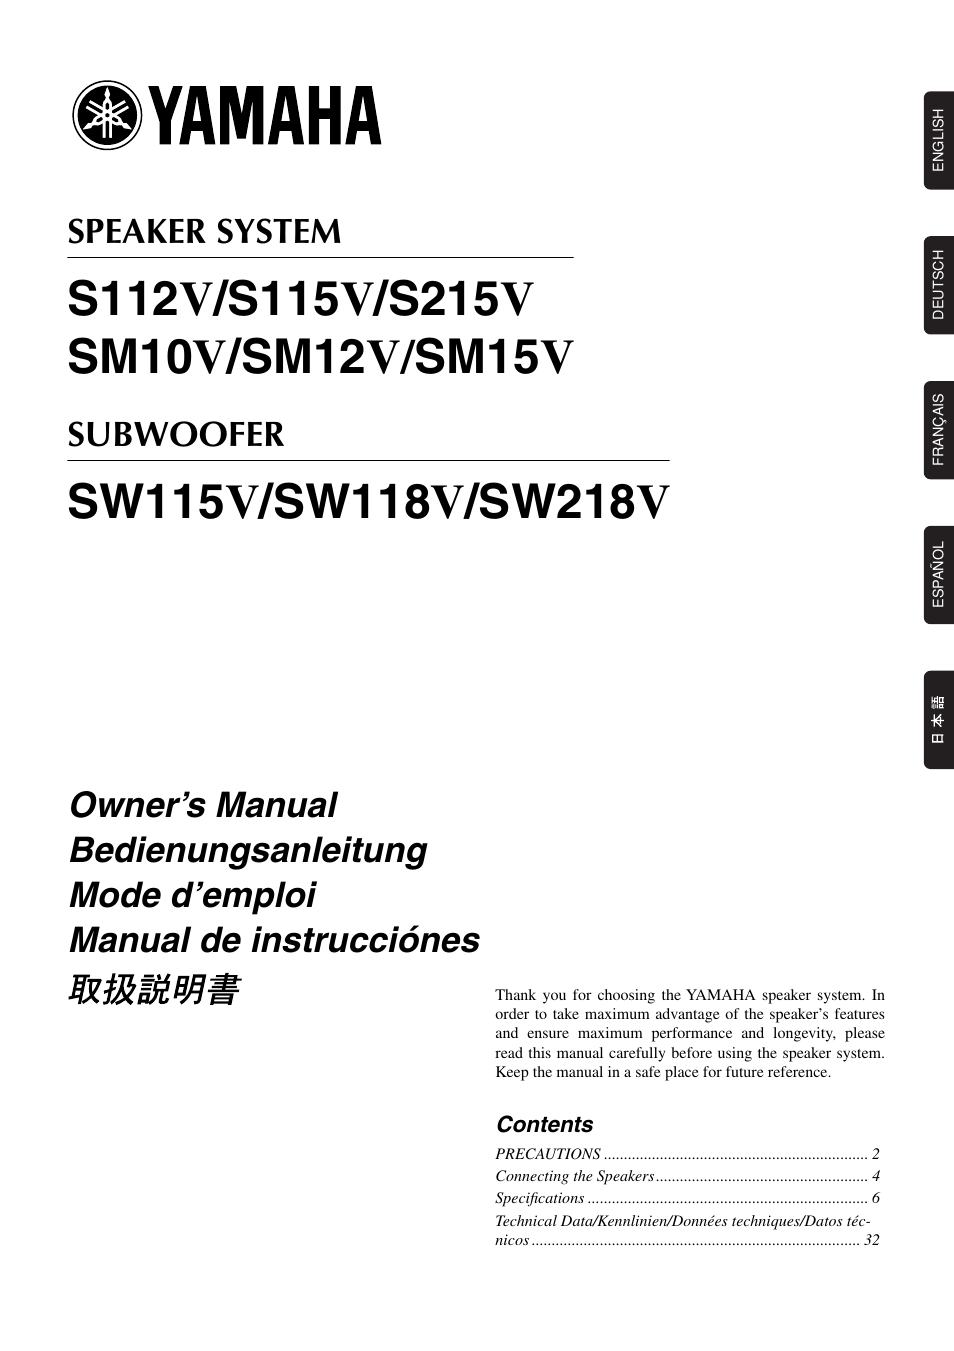 Yamaha SW218V Manual del usuario | Páginas: 12